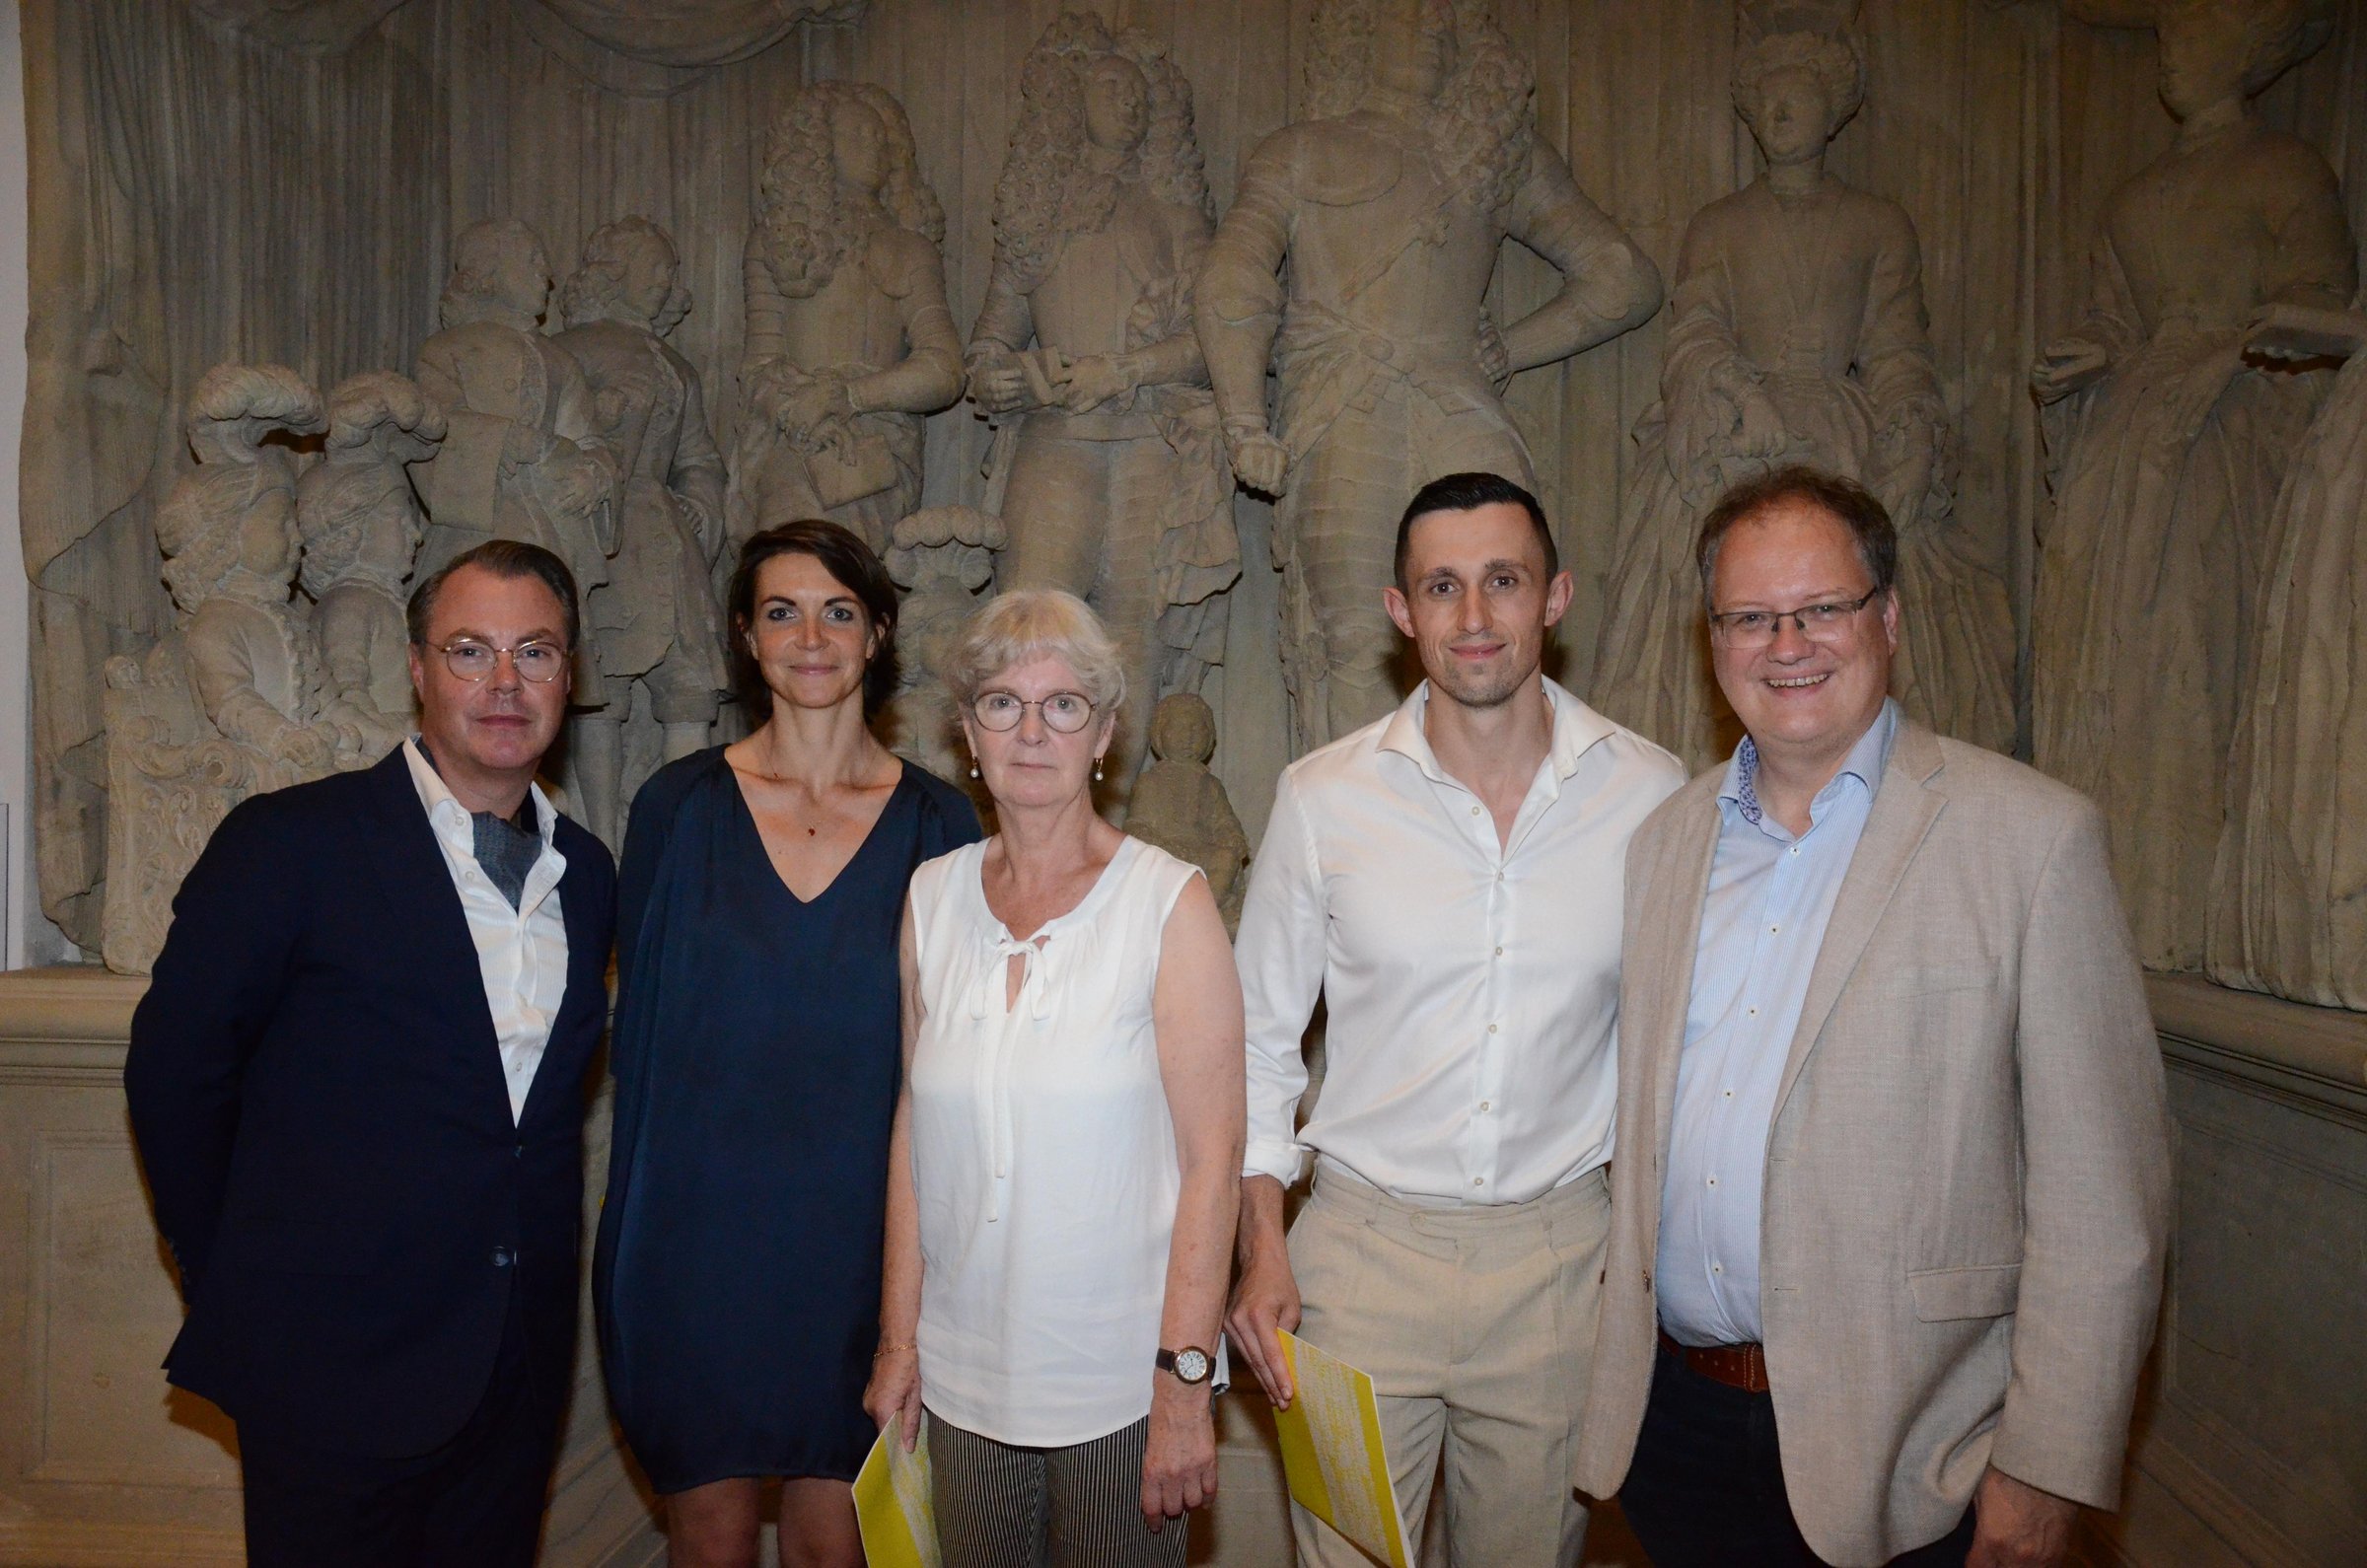 Das Bild zeigt von links nach rechts den Leiter des Märkischen Museums Witten, Christoph Kohl, die Preisträgerin Sophia Kirst, die Preisträgerin Christiane Heller, den Preisträger Dmytro Geshengorin sowie den Landrat des Ennepe-Ruhr-Kreises, Olaf Schade.